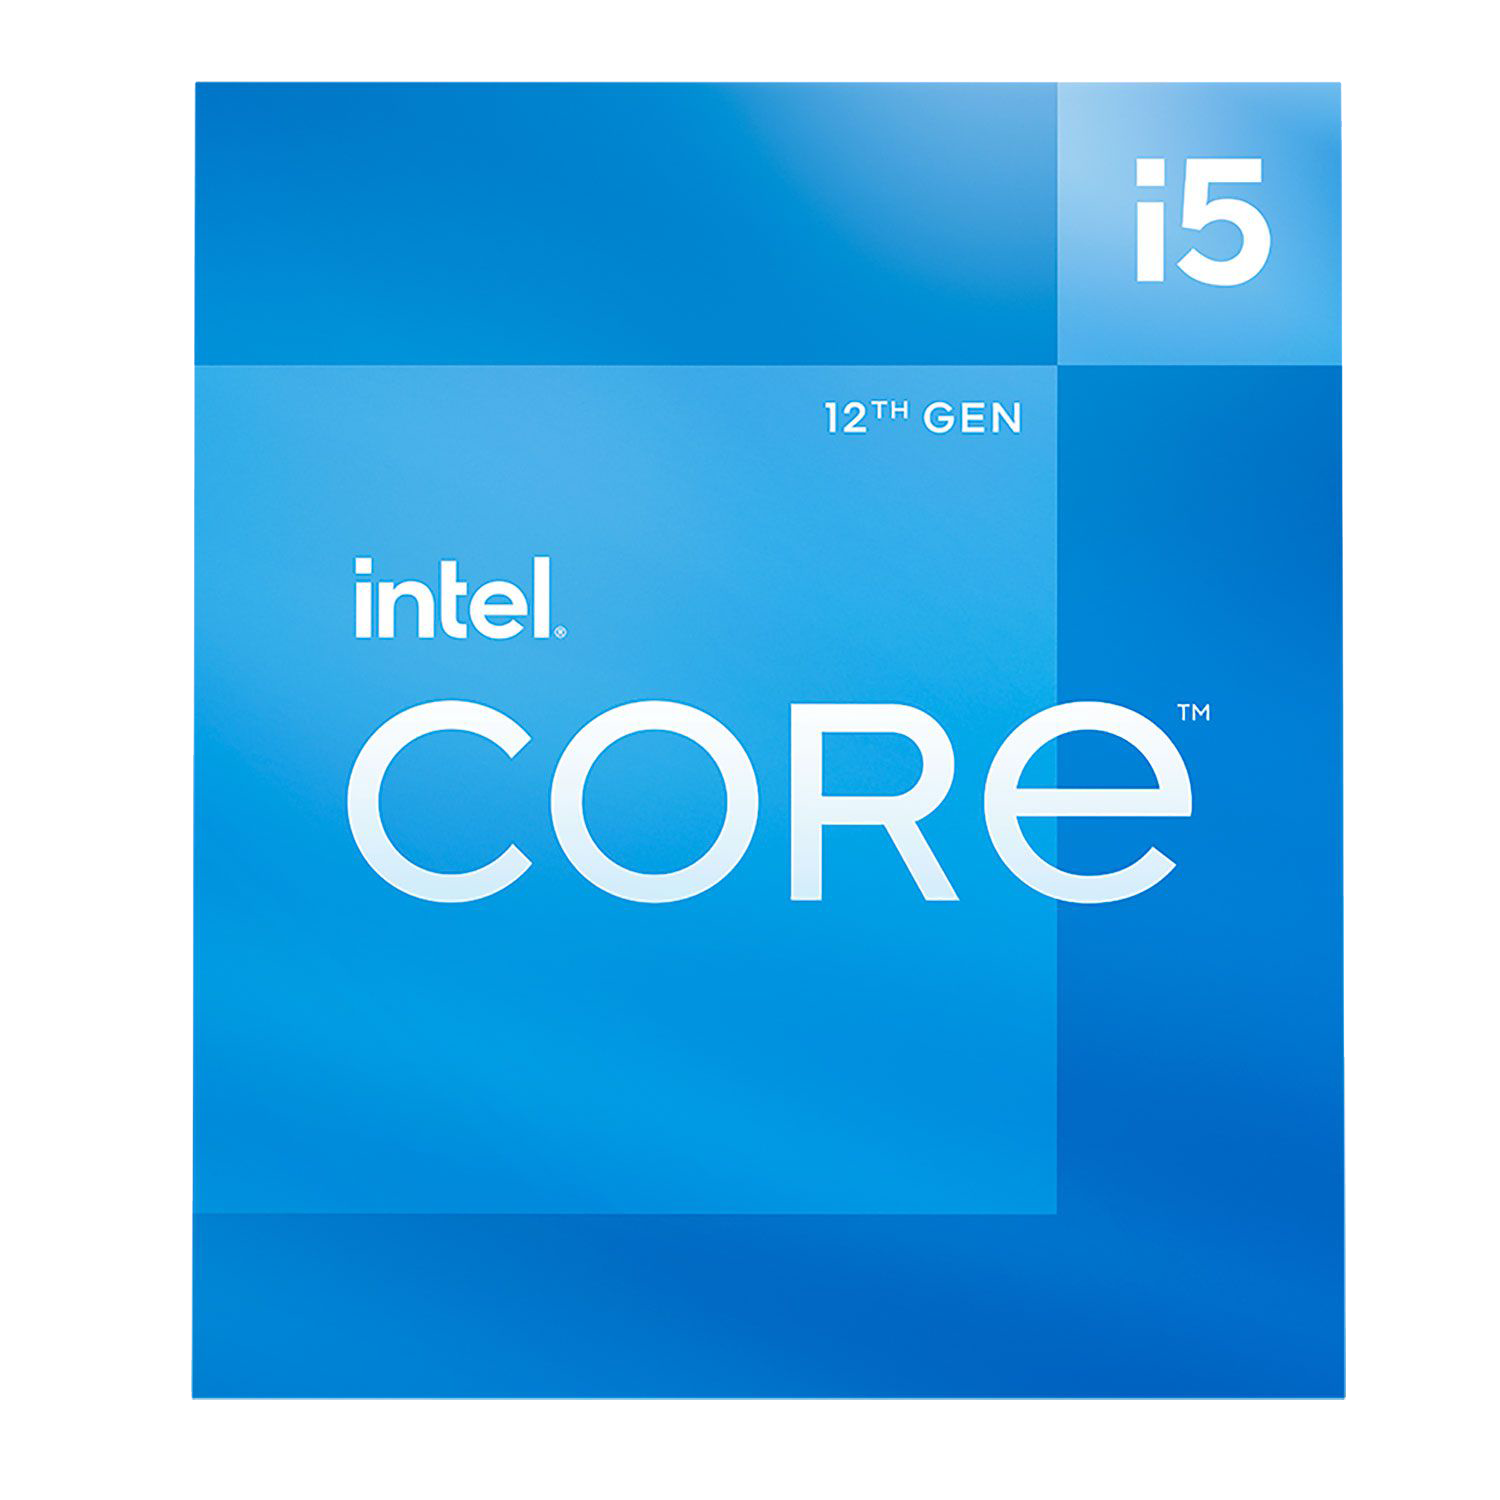 12th Gen Intel Core i5-12600 Desktop Processor